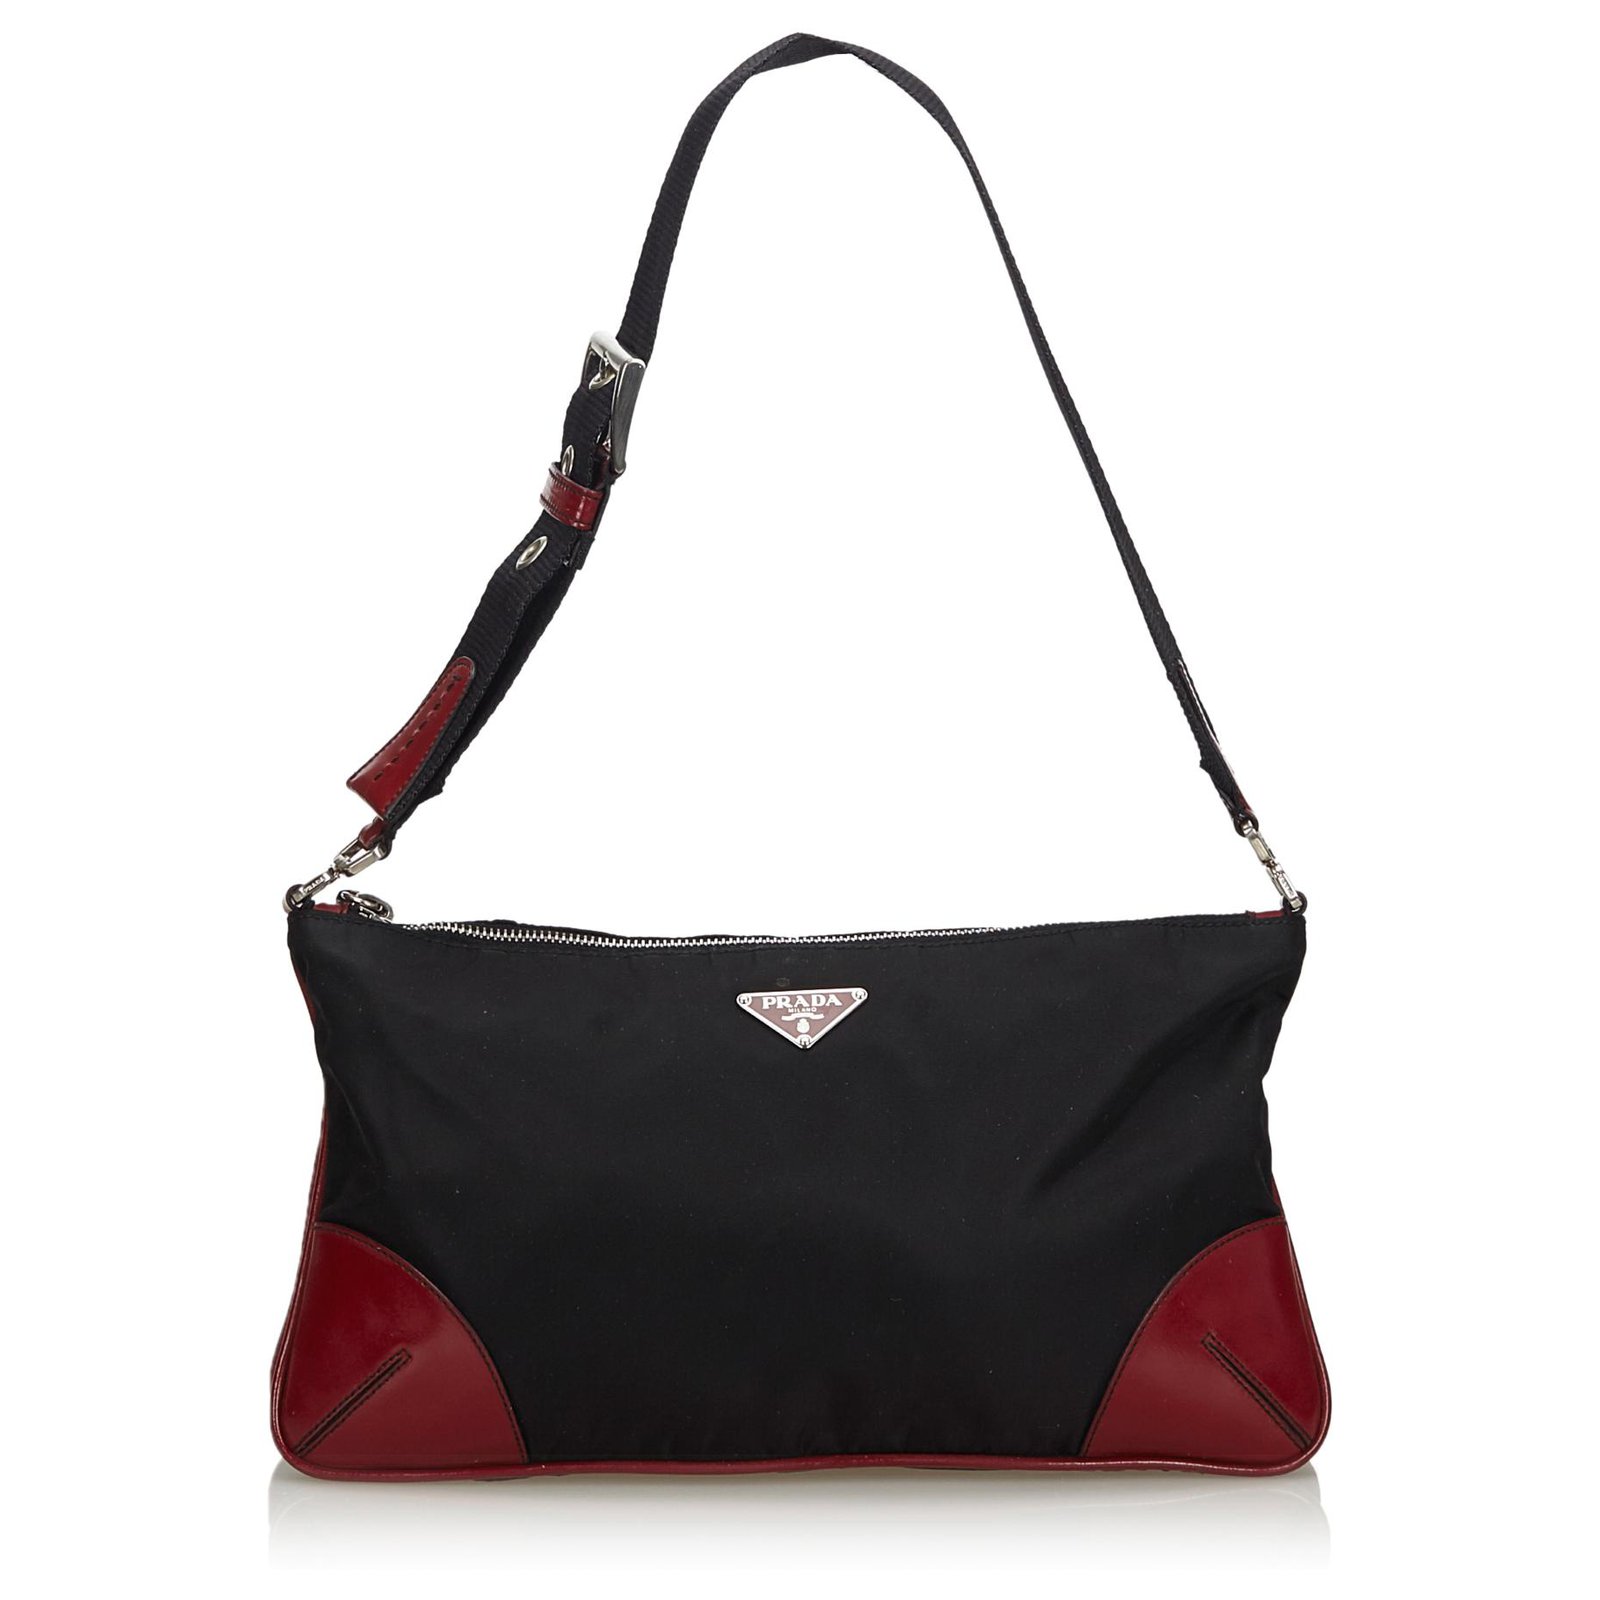 prada black and red handbag